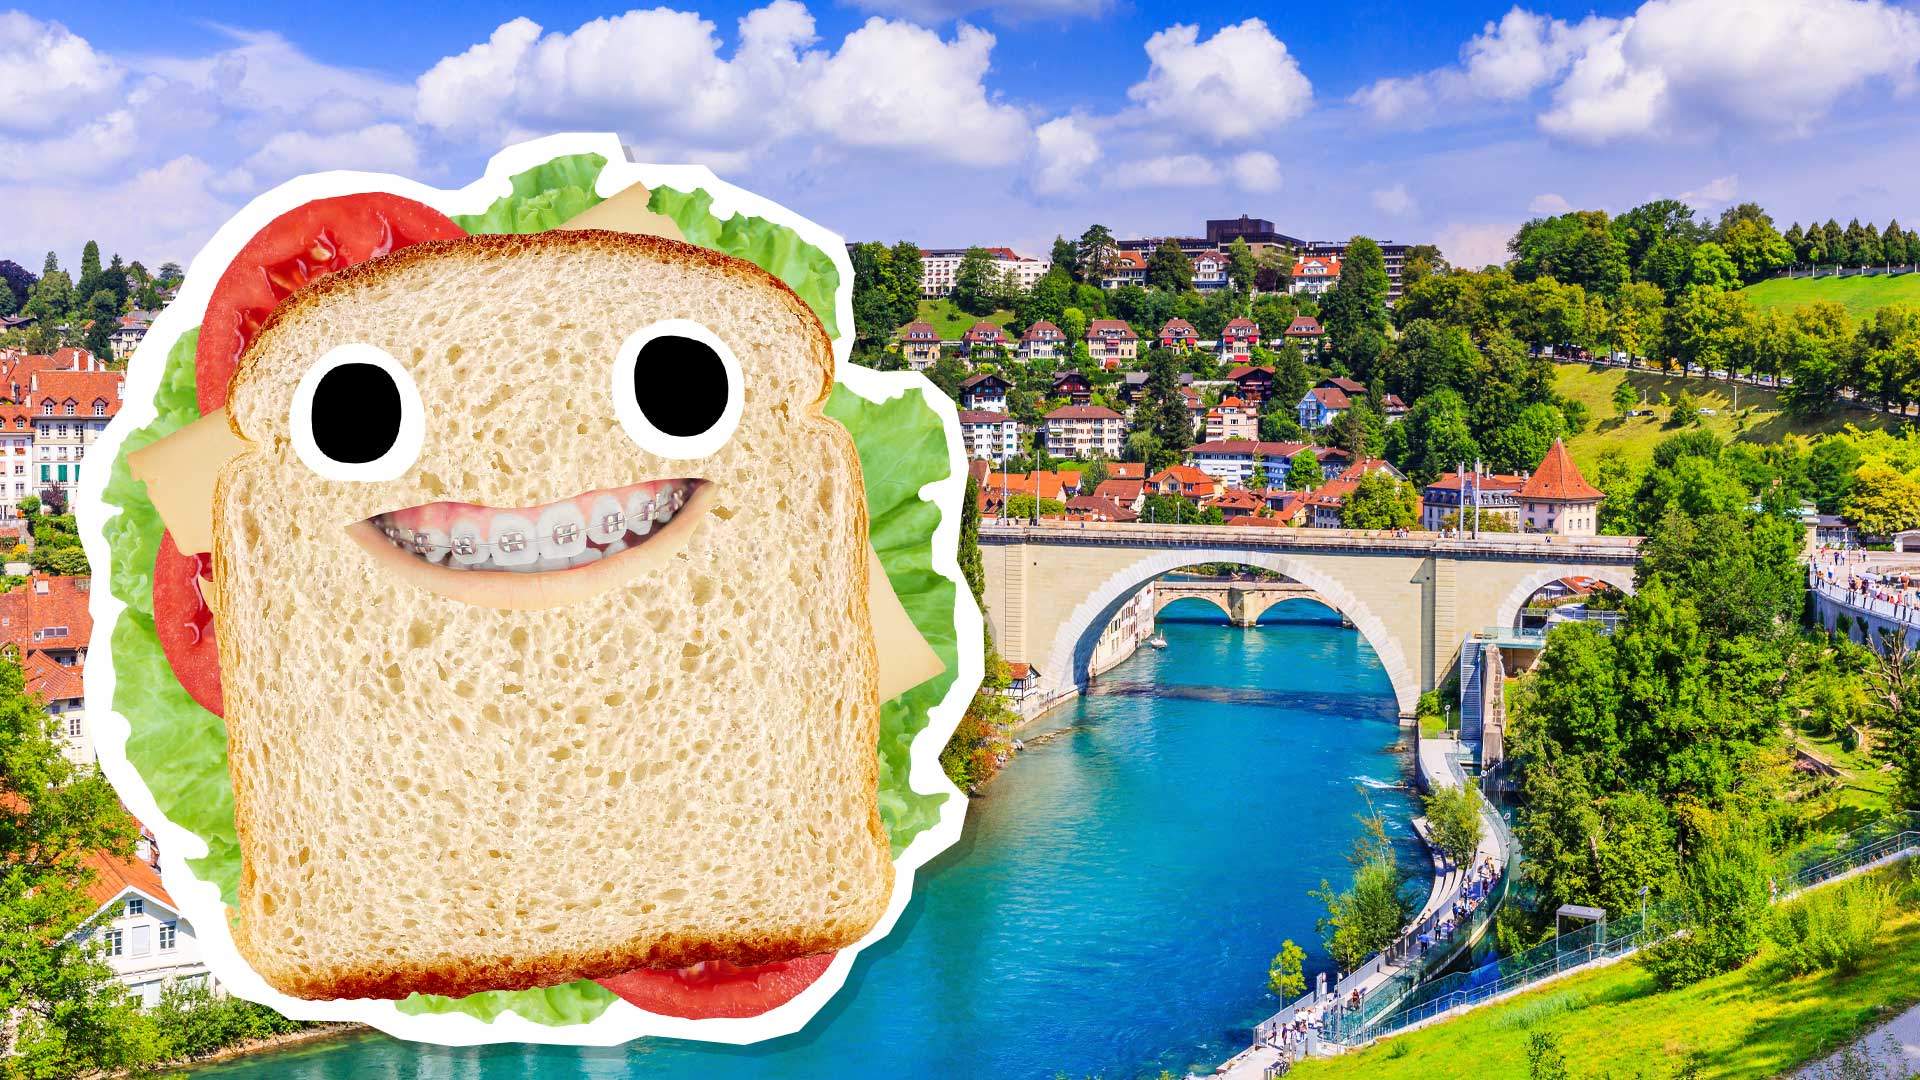 A sandwich in Europe